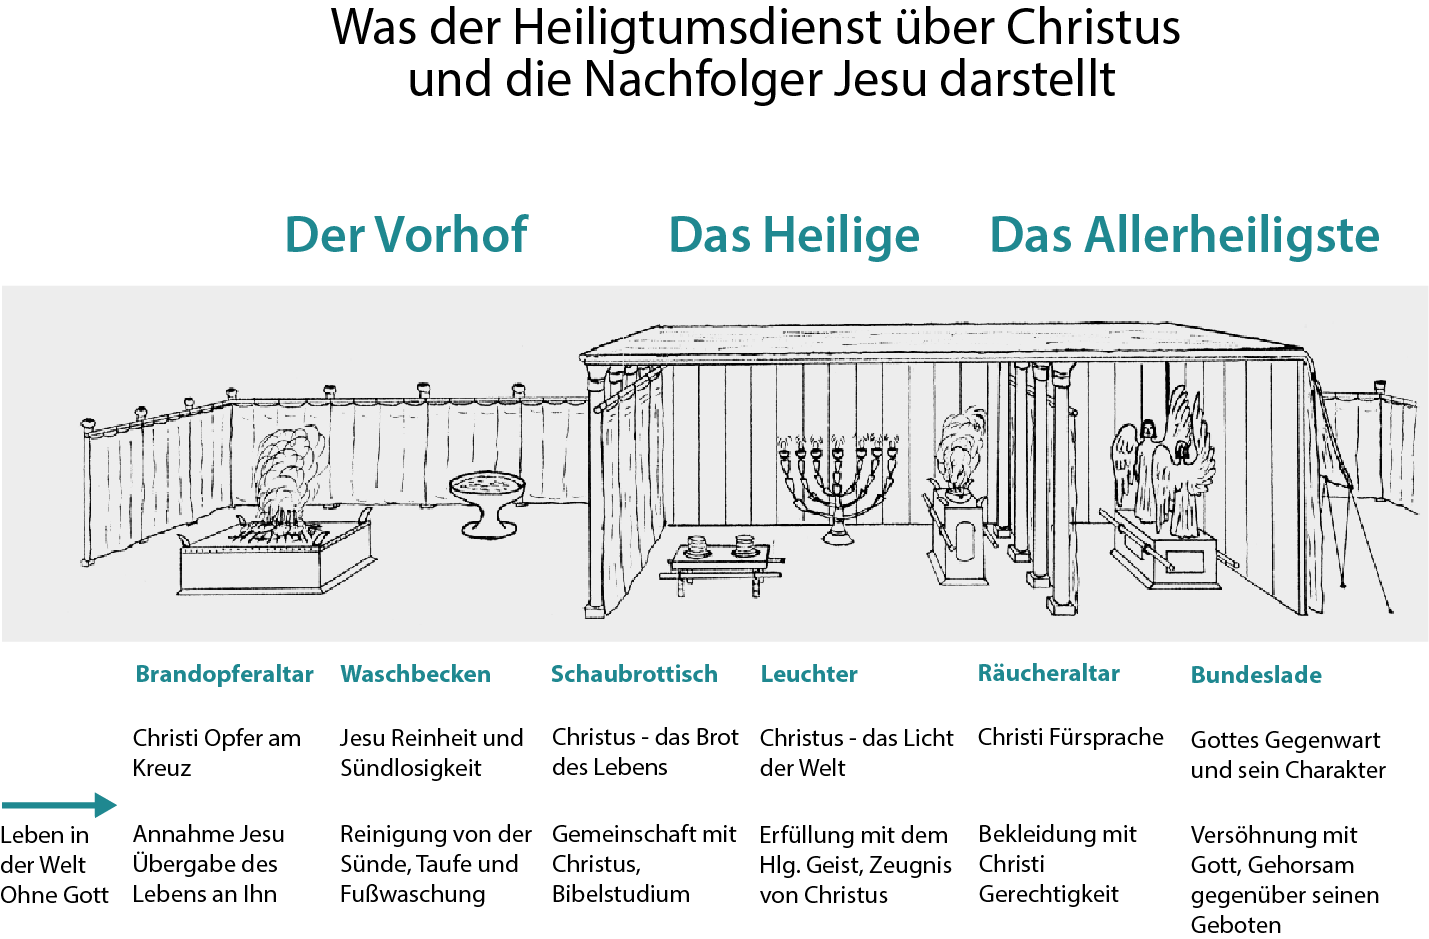 Grafik 1: Der Vorhof, das Heilige, das Allerheiligste des Heiligtums / Stiftshütte. Was der Heiligtumsdienst über Christus und die Nachfolge Jesu darstellt.